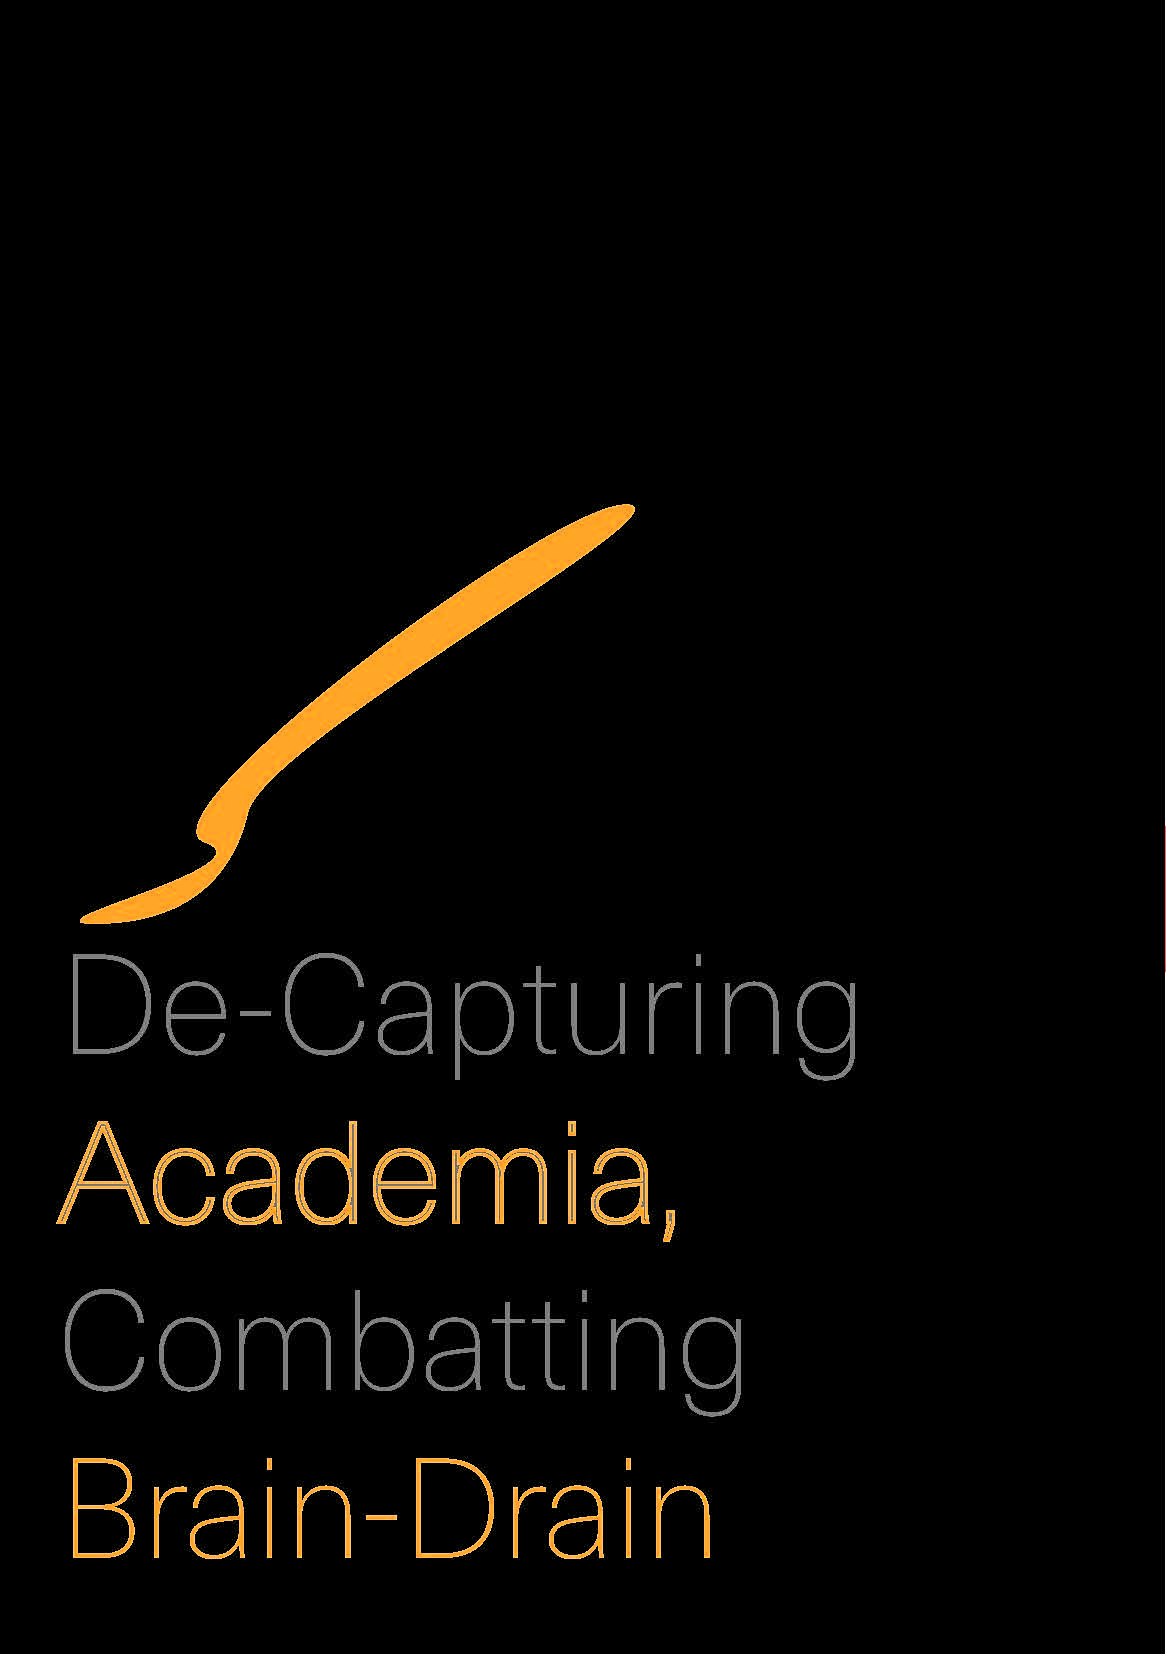 De-Capturing Academia, Combatting Brain-Drain